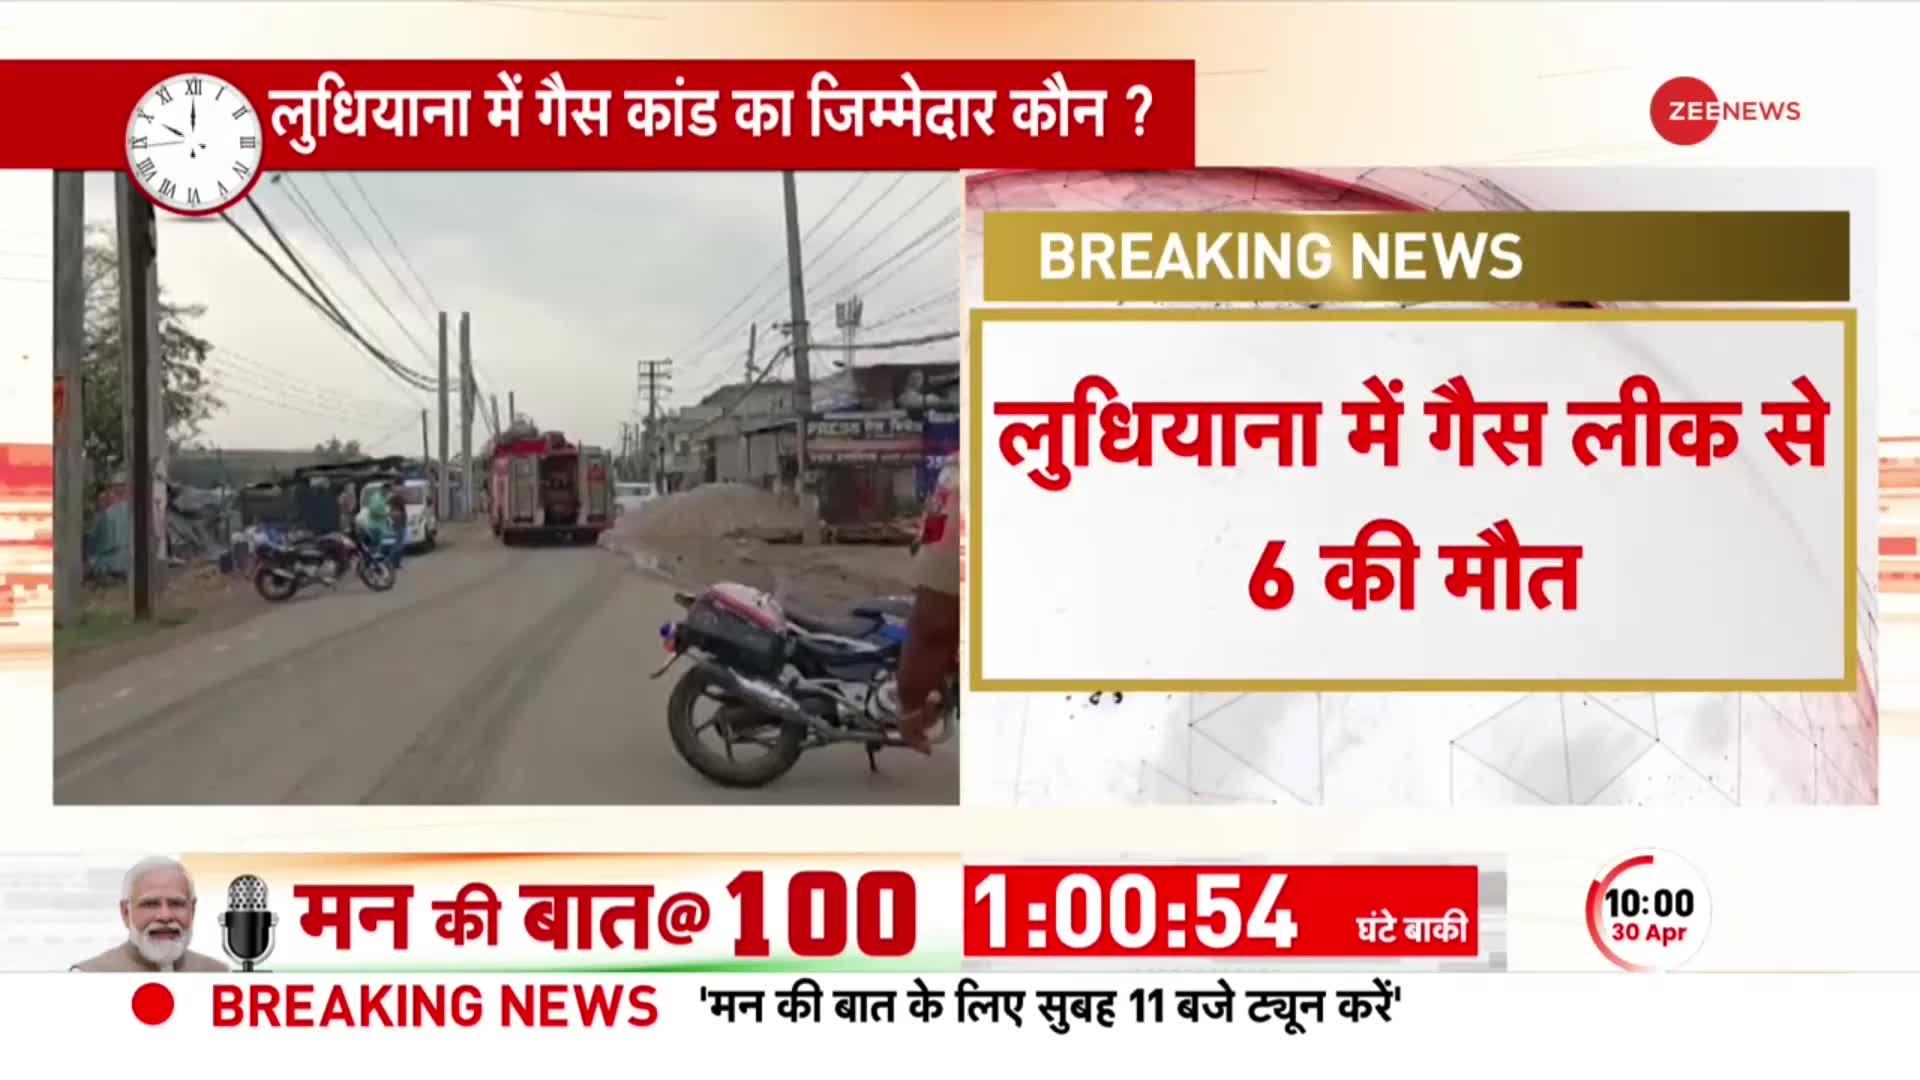 Ludhiana Gas Leak: लुधियाना में गैसकांड से हड़कंप, गैस रिसाव से 11 लोगों की मौत | Breaking